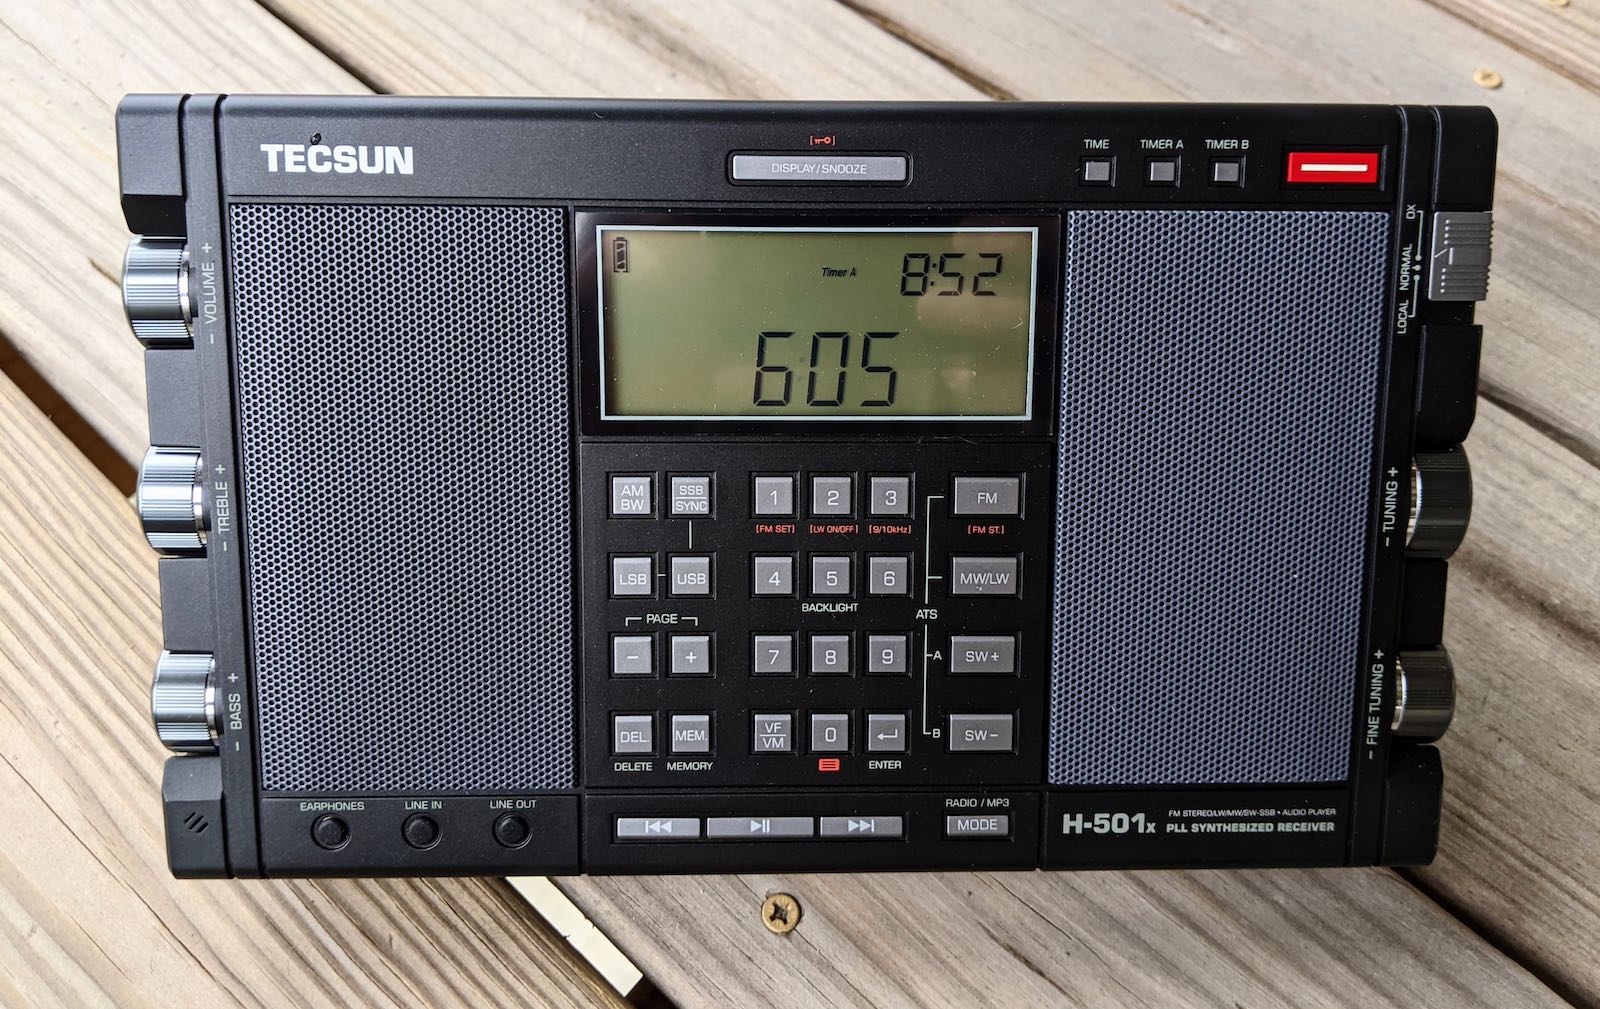 A review of the Tecsun H-501x portable shortwave radio receiver